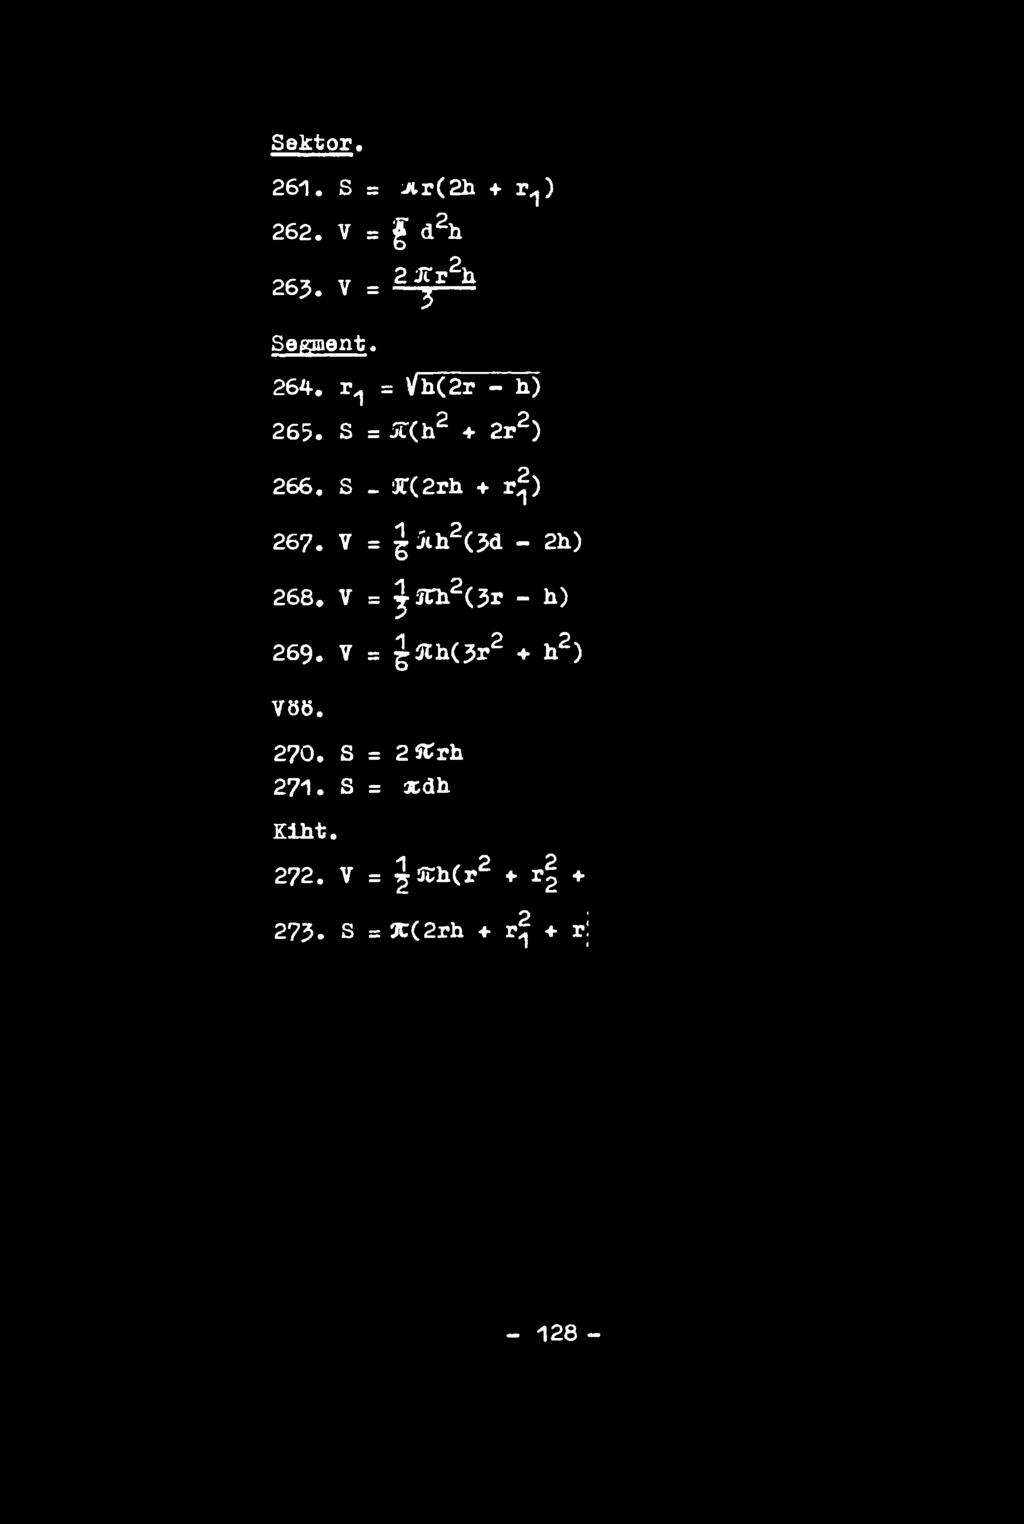 V = J Jch2(3d - 2h) 268. V = ^ЗГИ2(Зг - W 269. V = ^5tb(3r2 h2) Vöö. 270.